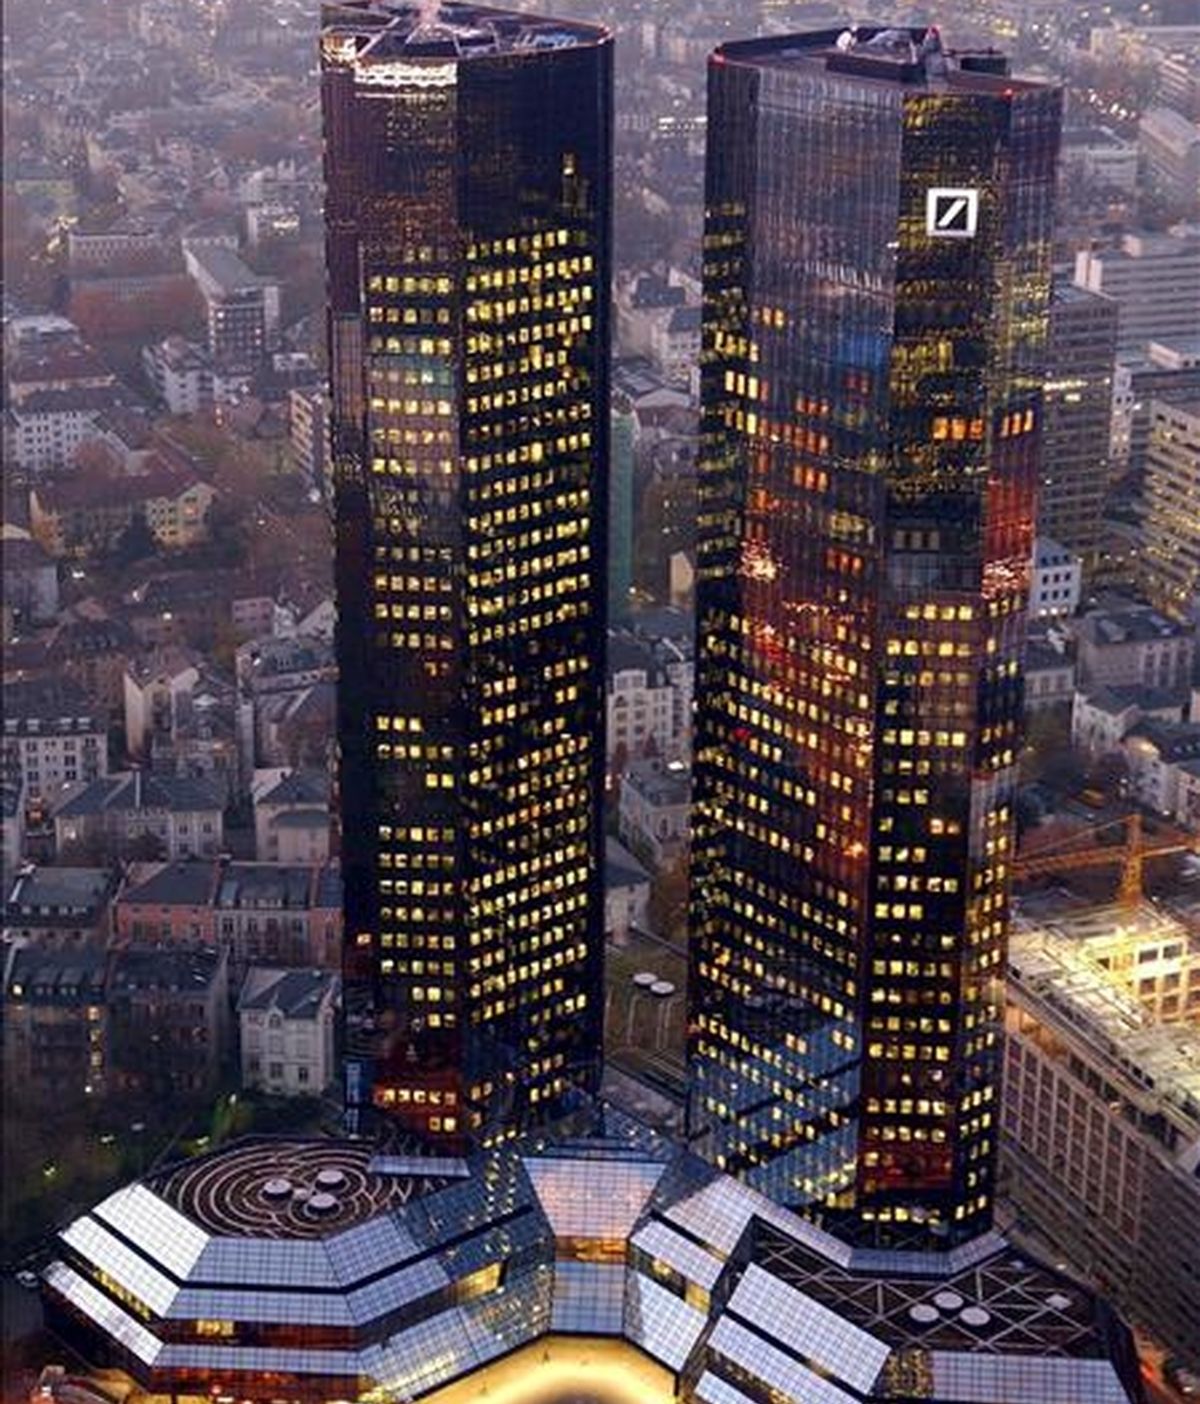 Foto del 26 de noviembre de 2007 que muestra las dos torres gemelas que albergan la sede del banco alemán Deutsche Bank en Fráncfort, Alemania. EFE/Archivo